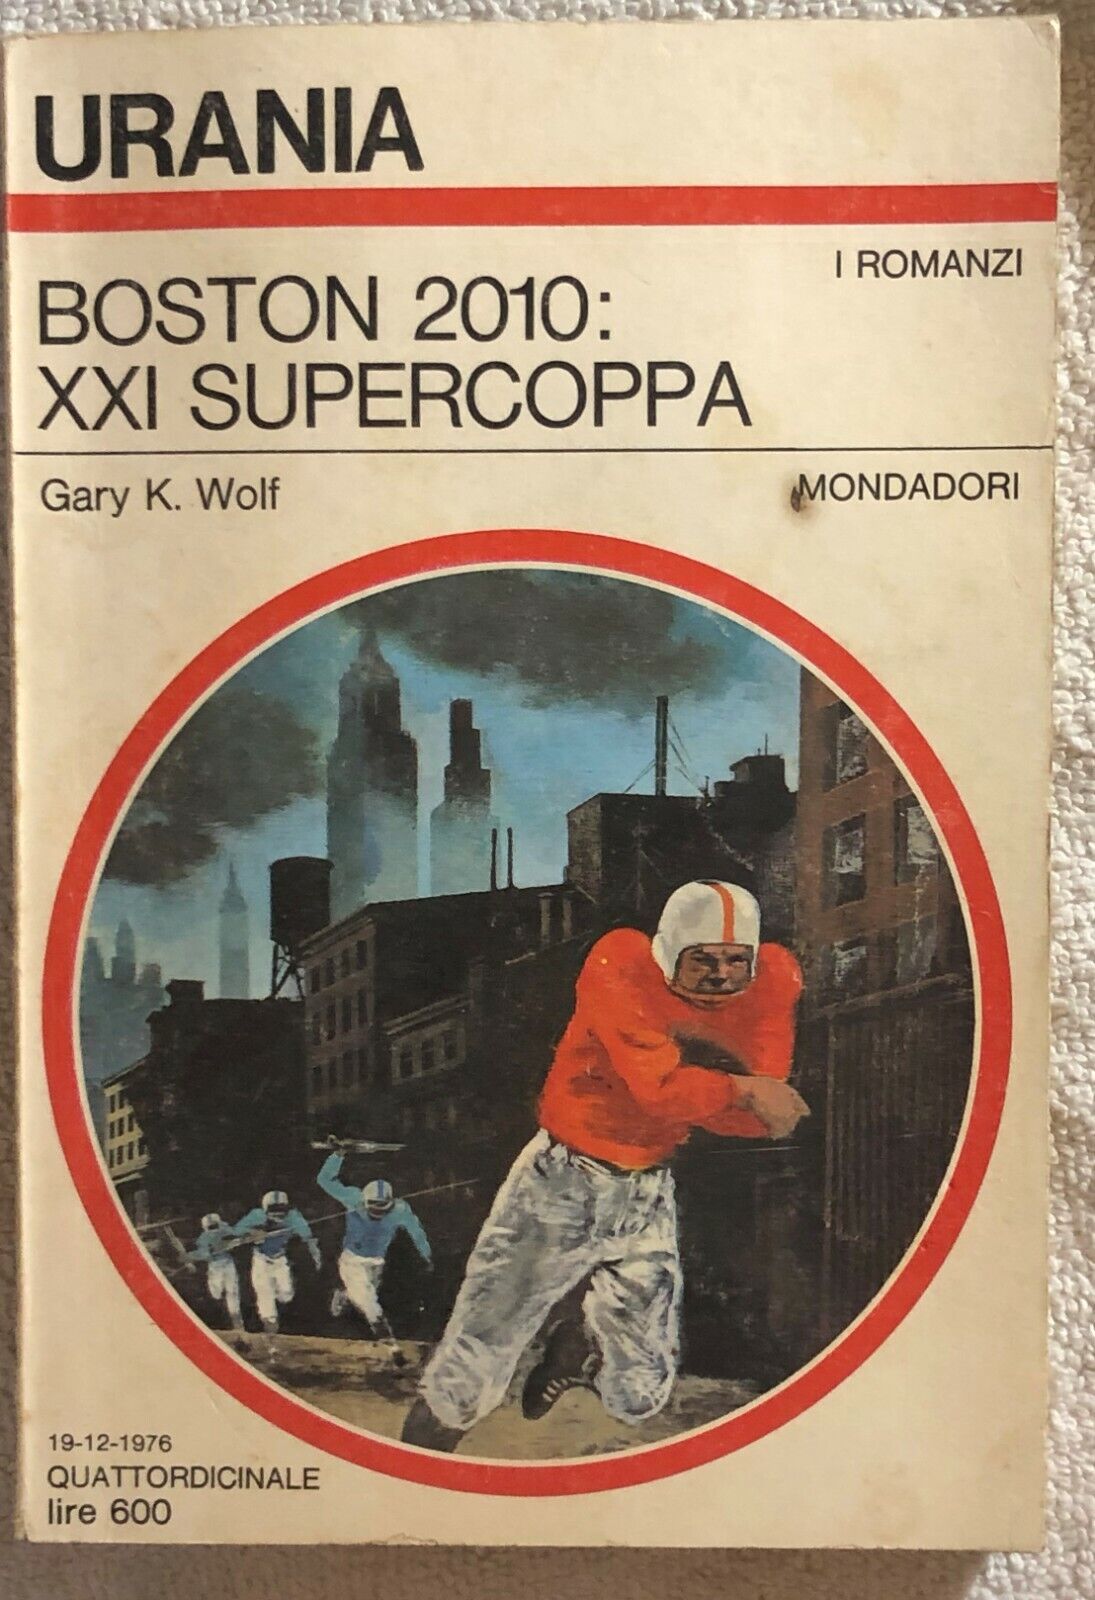 Boston 2010: XXI Supercoppa di Gary K. Wolf,  1976,  Mondadori